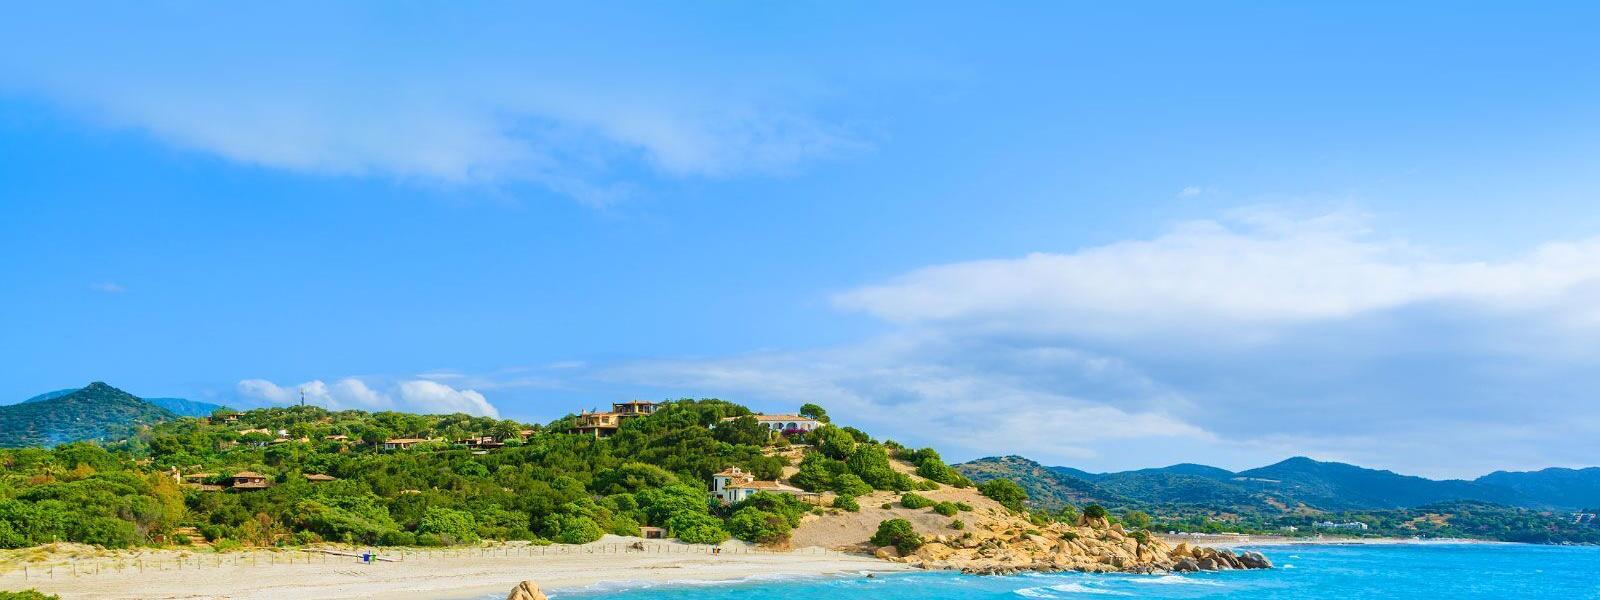 Mittelmeersonne auf Sardinien: Ferienhäuser & Fewos an der Costa Rei - e-domizil